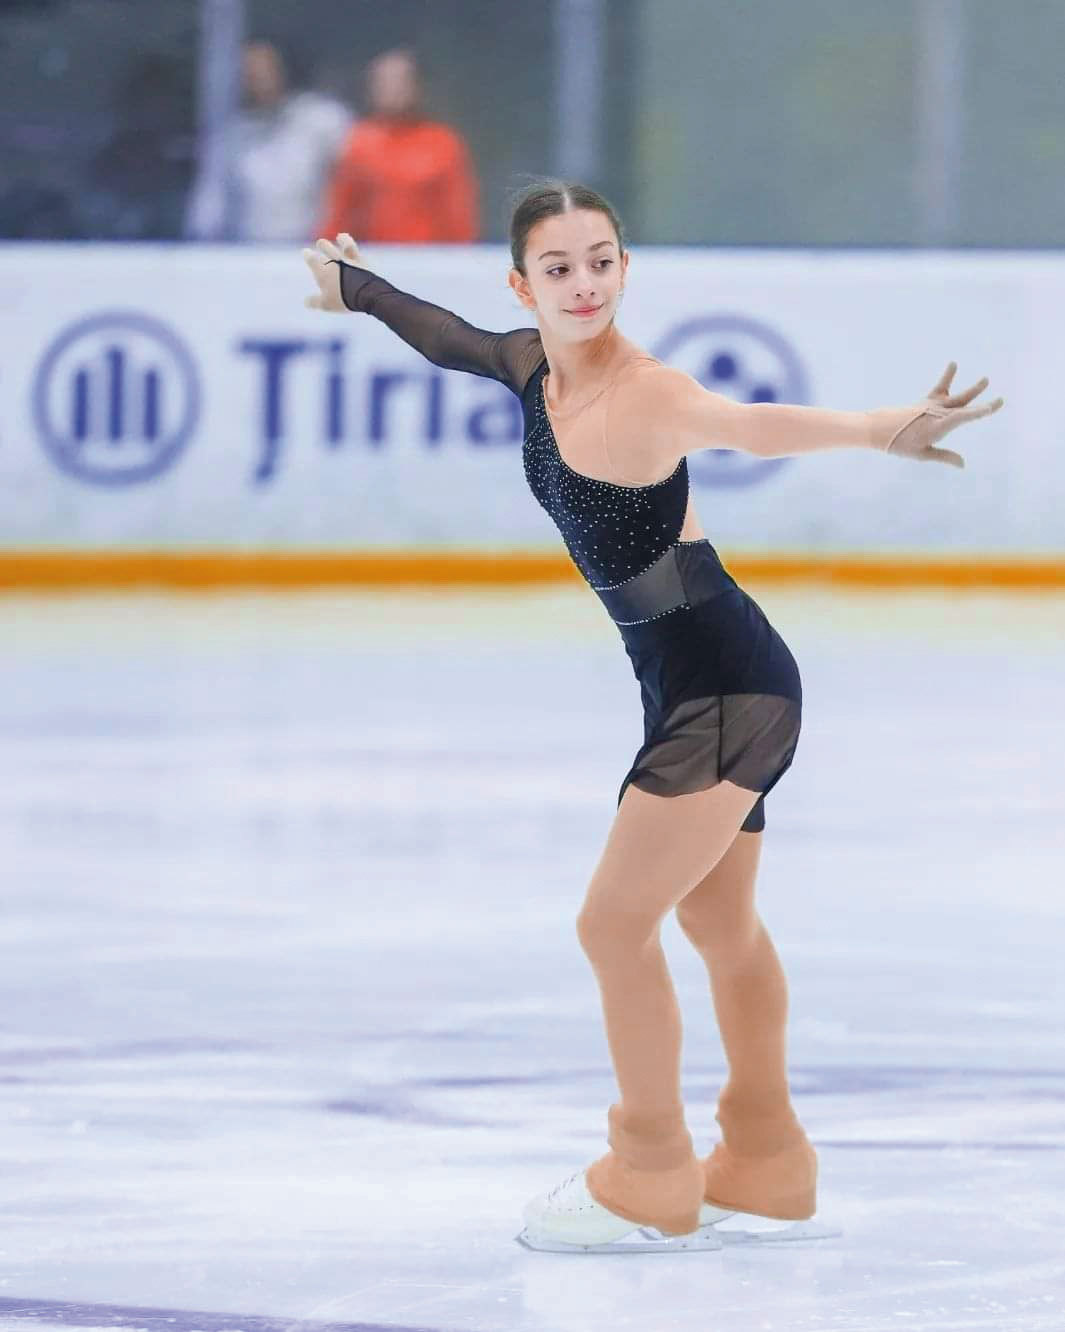 #superstories. Business sportiv. Pariul ZF pe viitorii campioni. Maria Smaranda, 15 ani, patinaj artistic: Deşi poţi fi talentat la un sport, doar prin muncă poţi ajunge acolo unde îţi doreşti